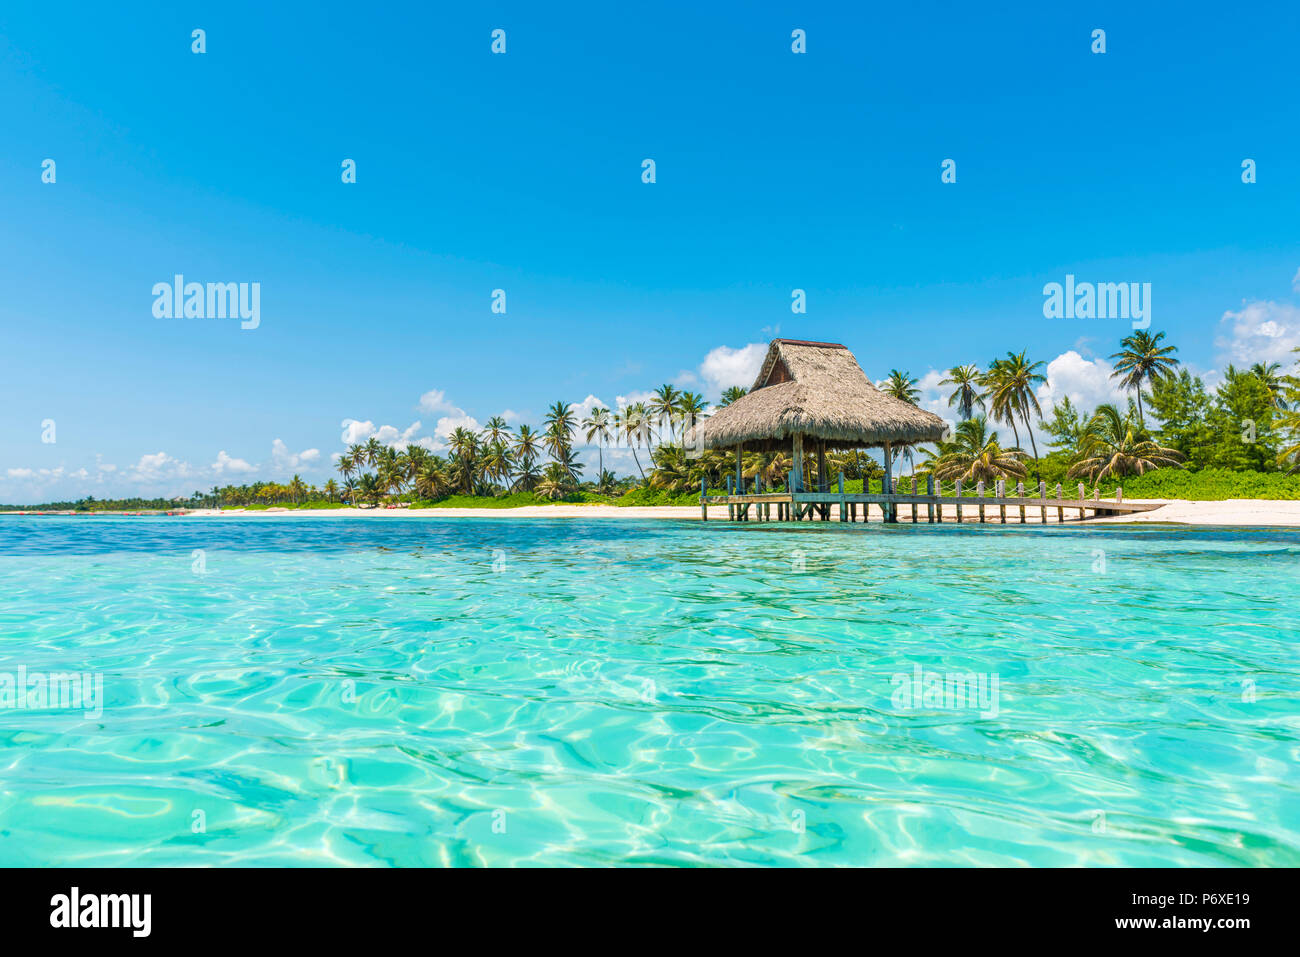 Playa Blanca, Punta Cana, Repubblica Dominicana, Mar dei Caraibi. Capanna con il tetto di paglia sulla spiaggia. Foto Stock